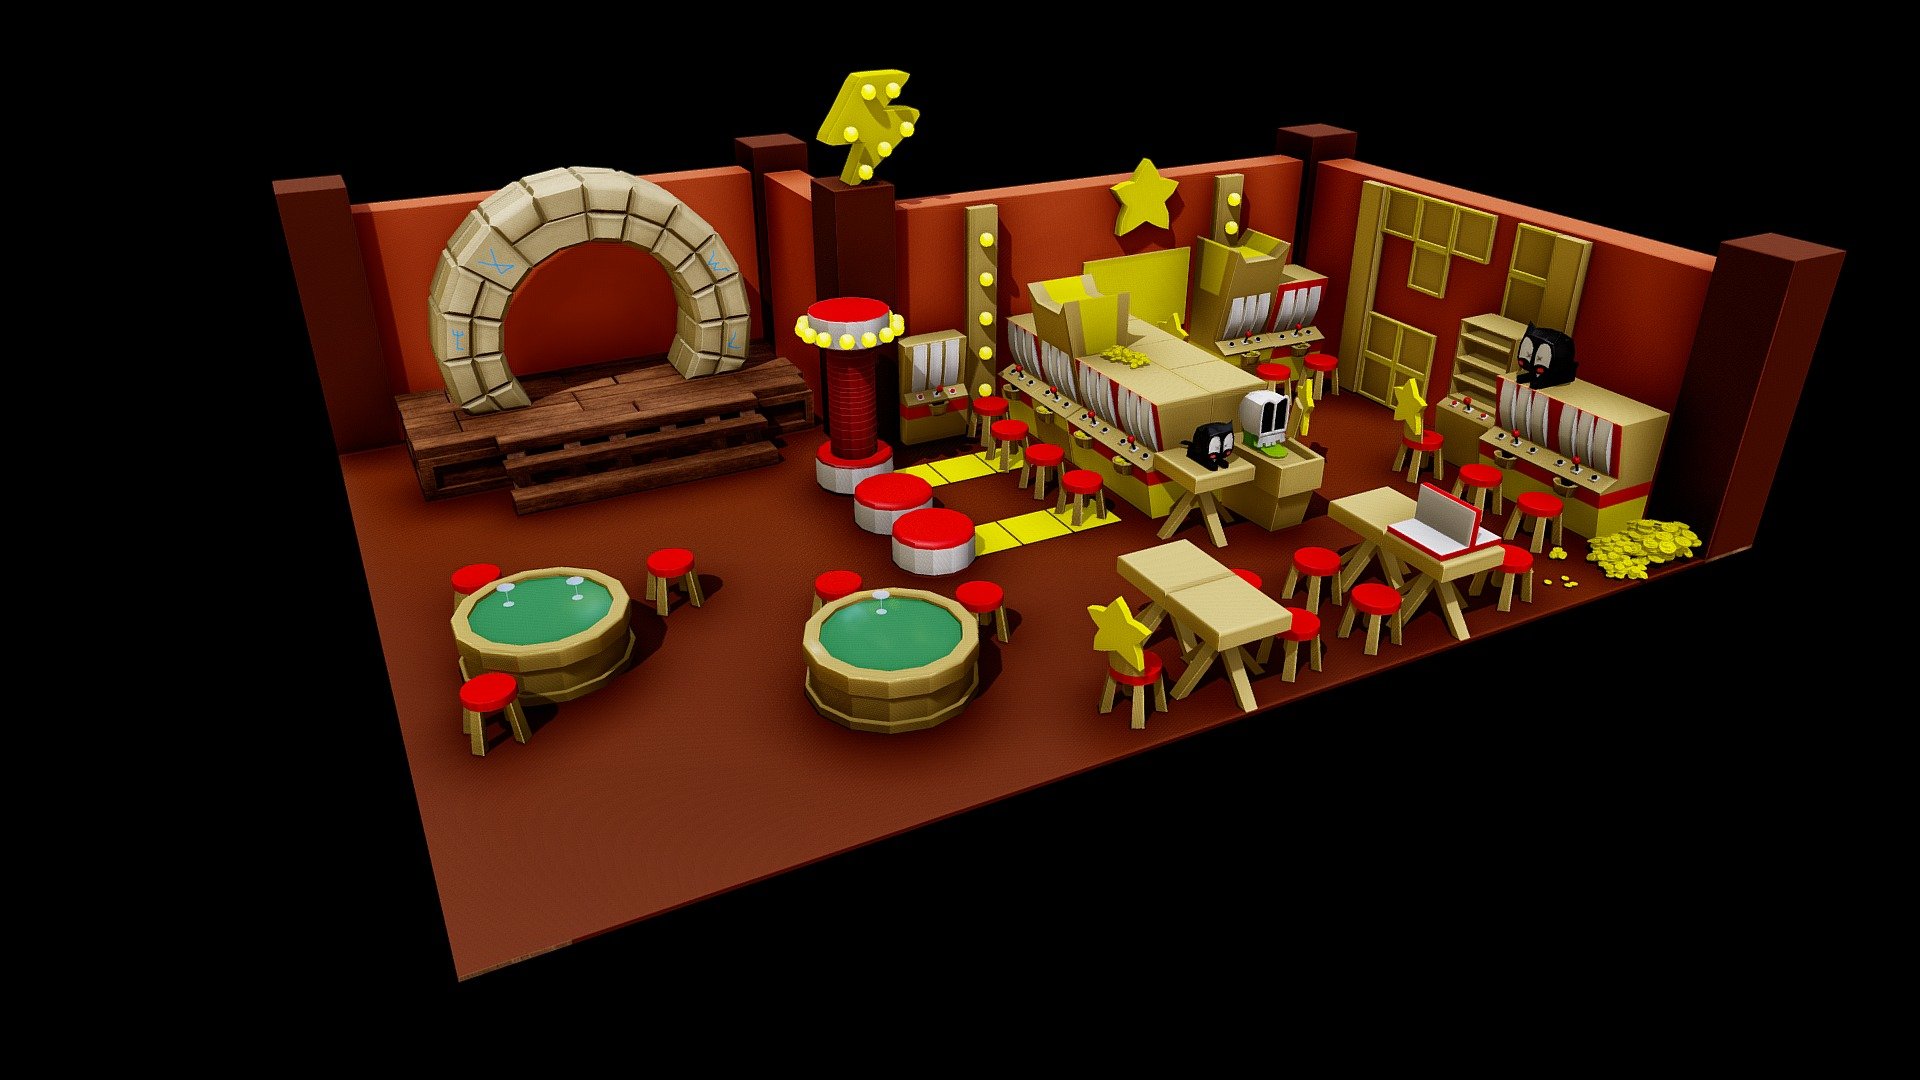 Dofus Casino 3d 
Made for educational purposes - Dofus Casino 3d - 3D model by Pablo Chona (Datamosh) (@datamosh_lad) 3d model